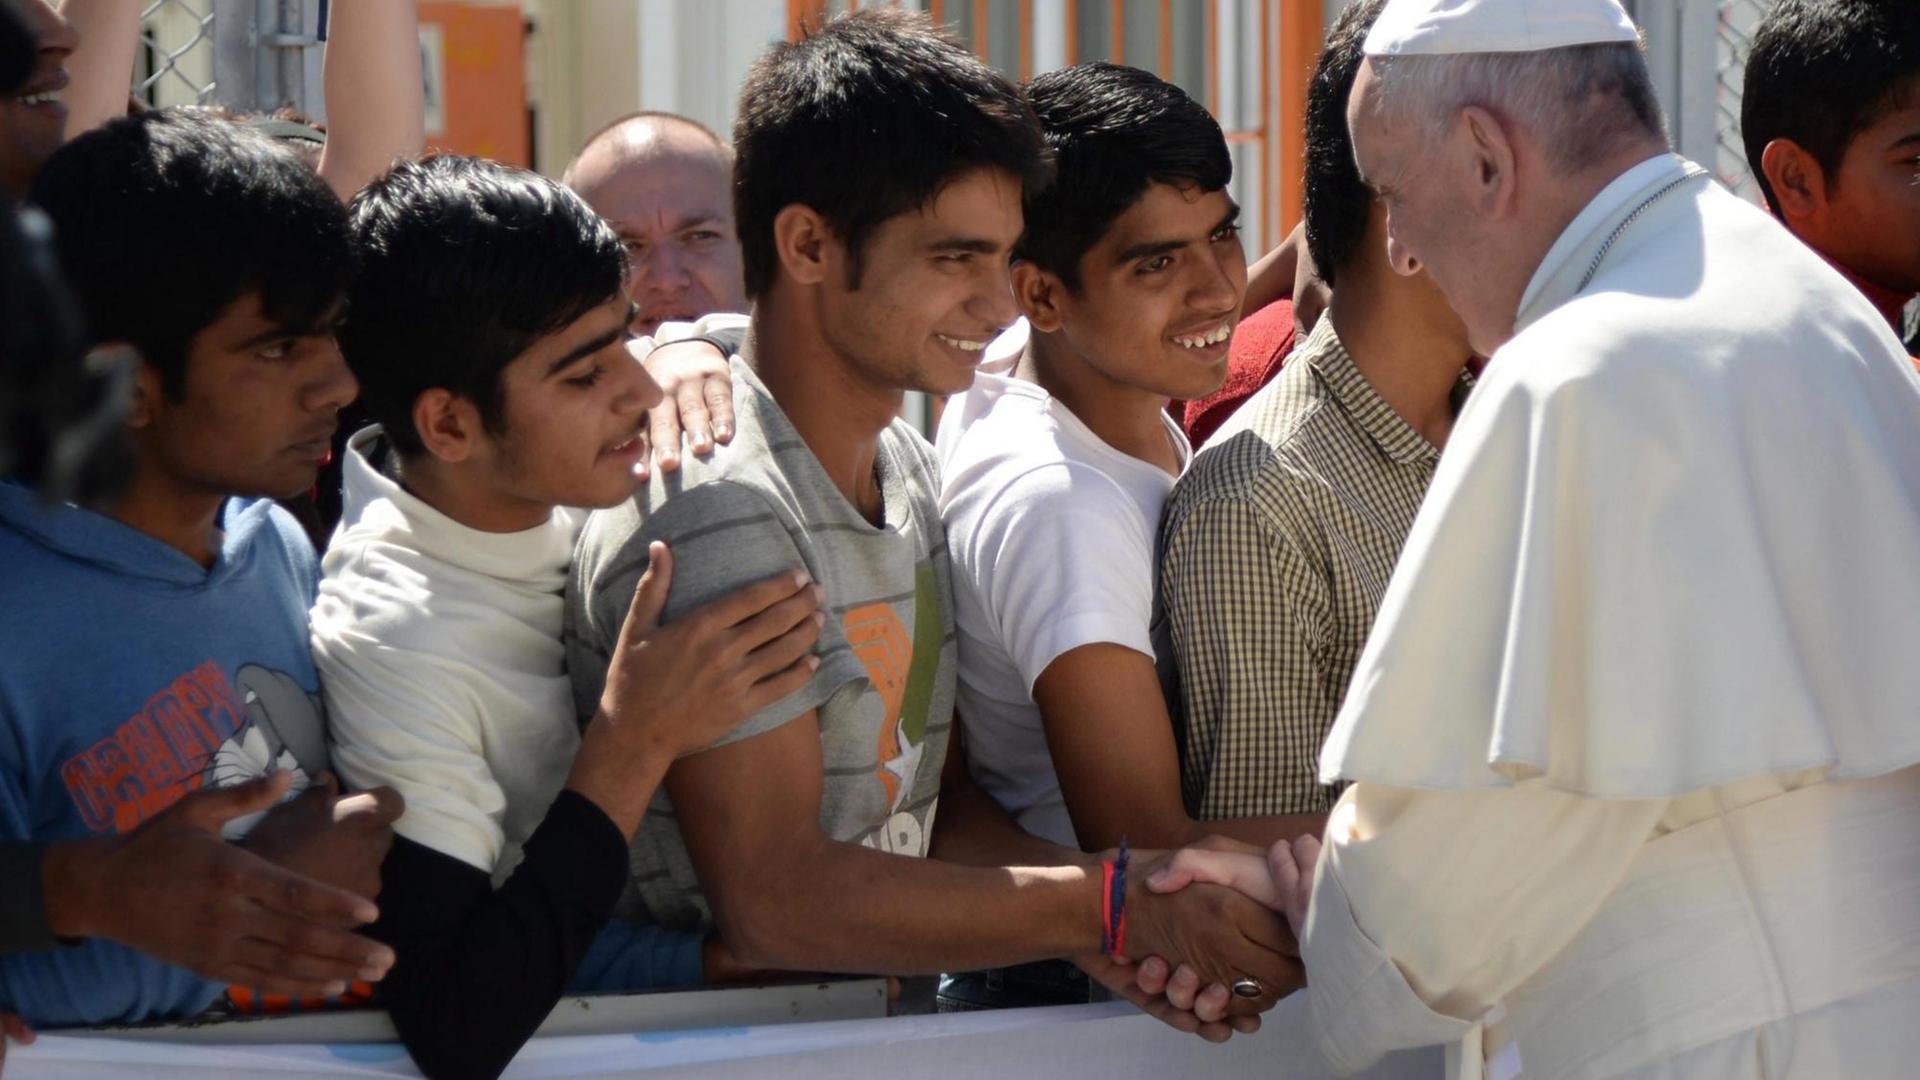 Papst Franziskus schüttelt jungen Flüchtlinge die Hand im Aufnahmezentrum Moria auf Lesbos